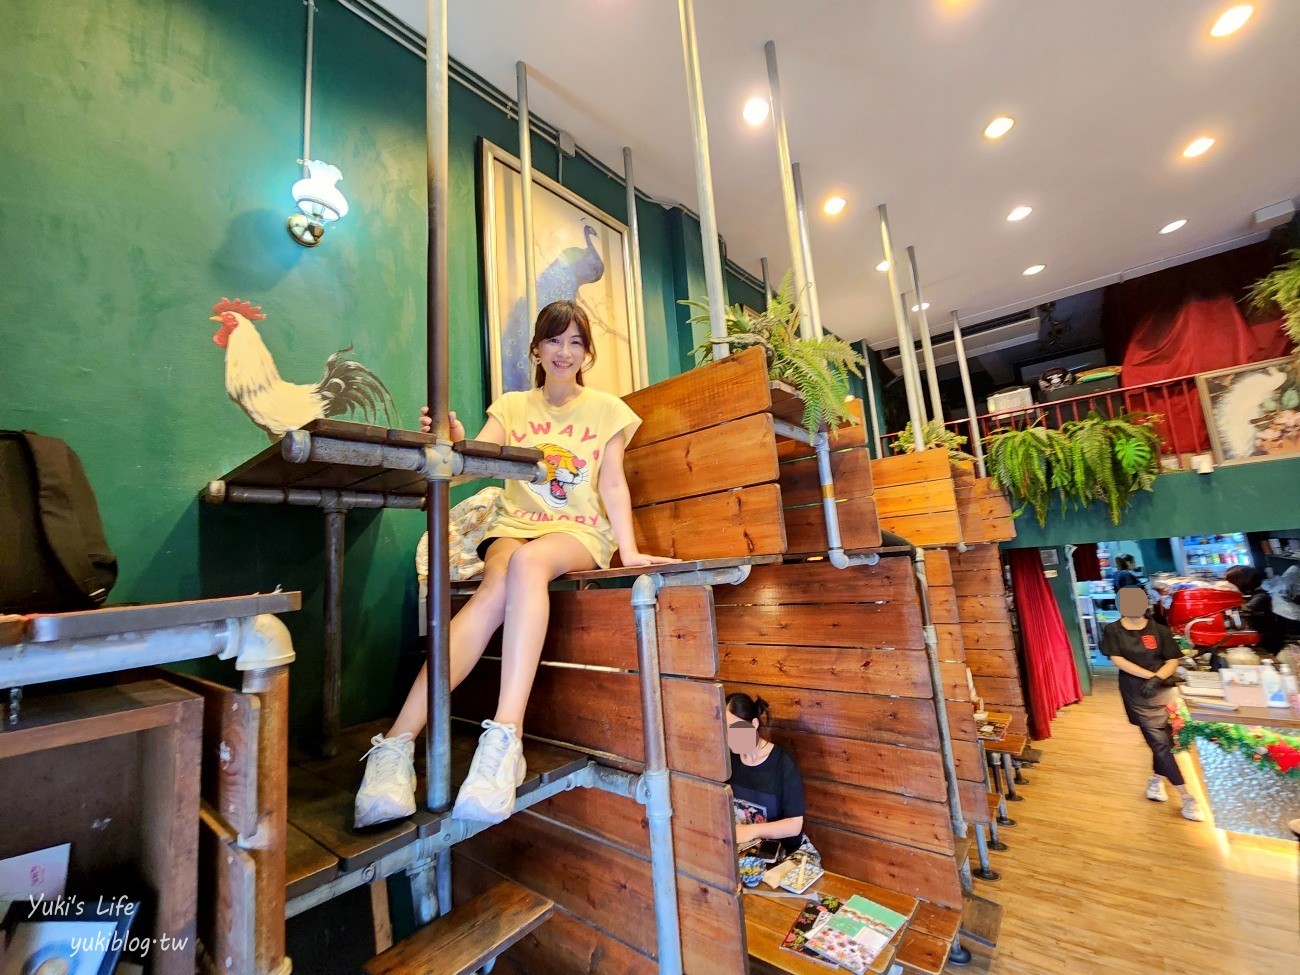 曼谷捷運地鐵景點攻略│曼谷MRT/BTS沿線必玩必吃景點,咖啡廳,美食,飯店住宿 - yuki.tw